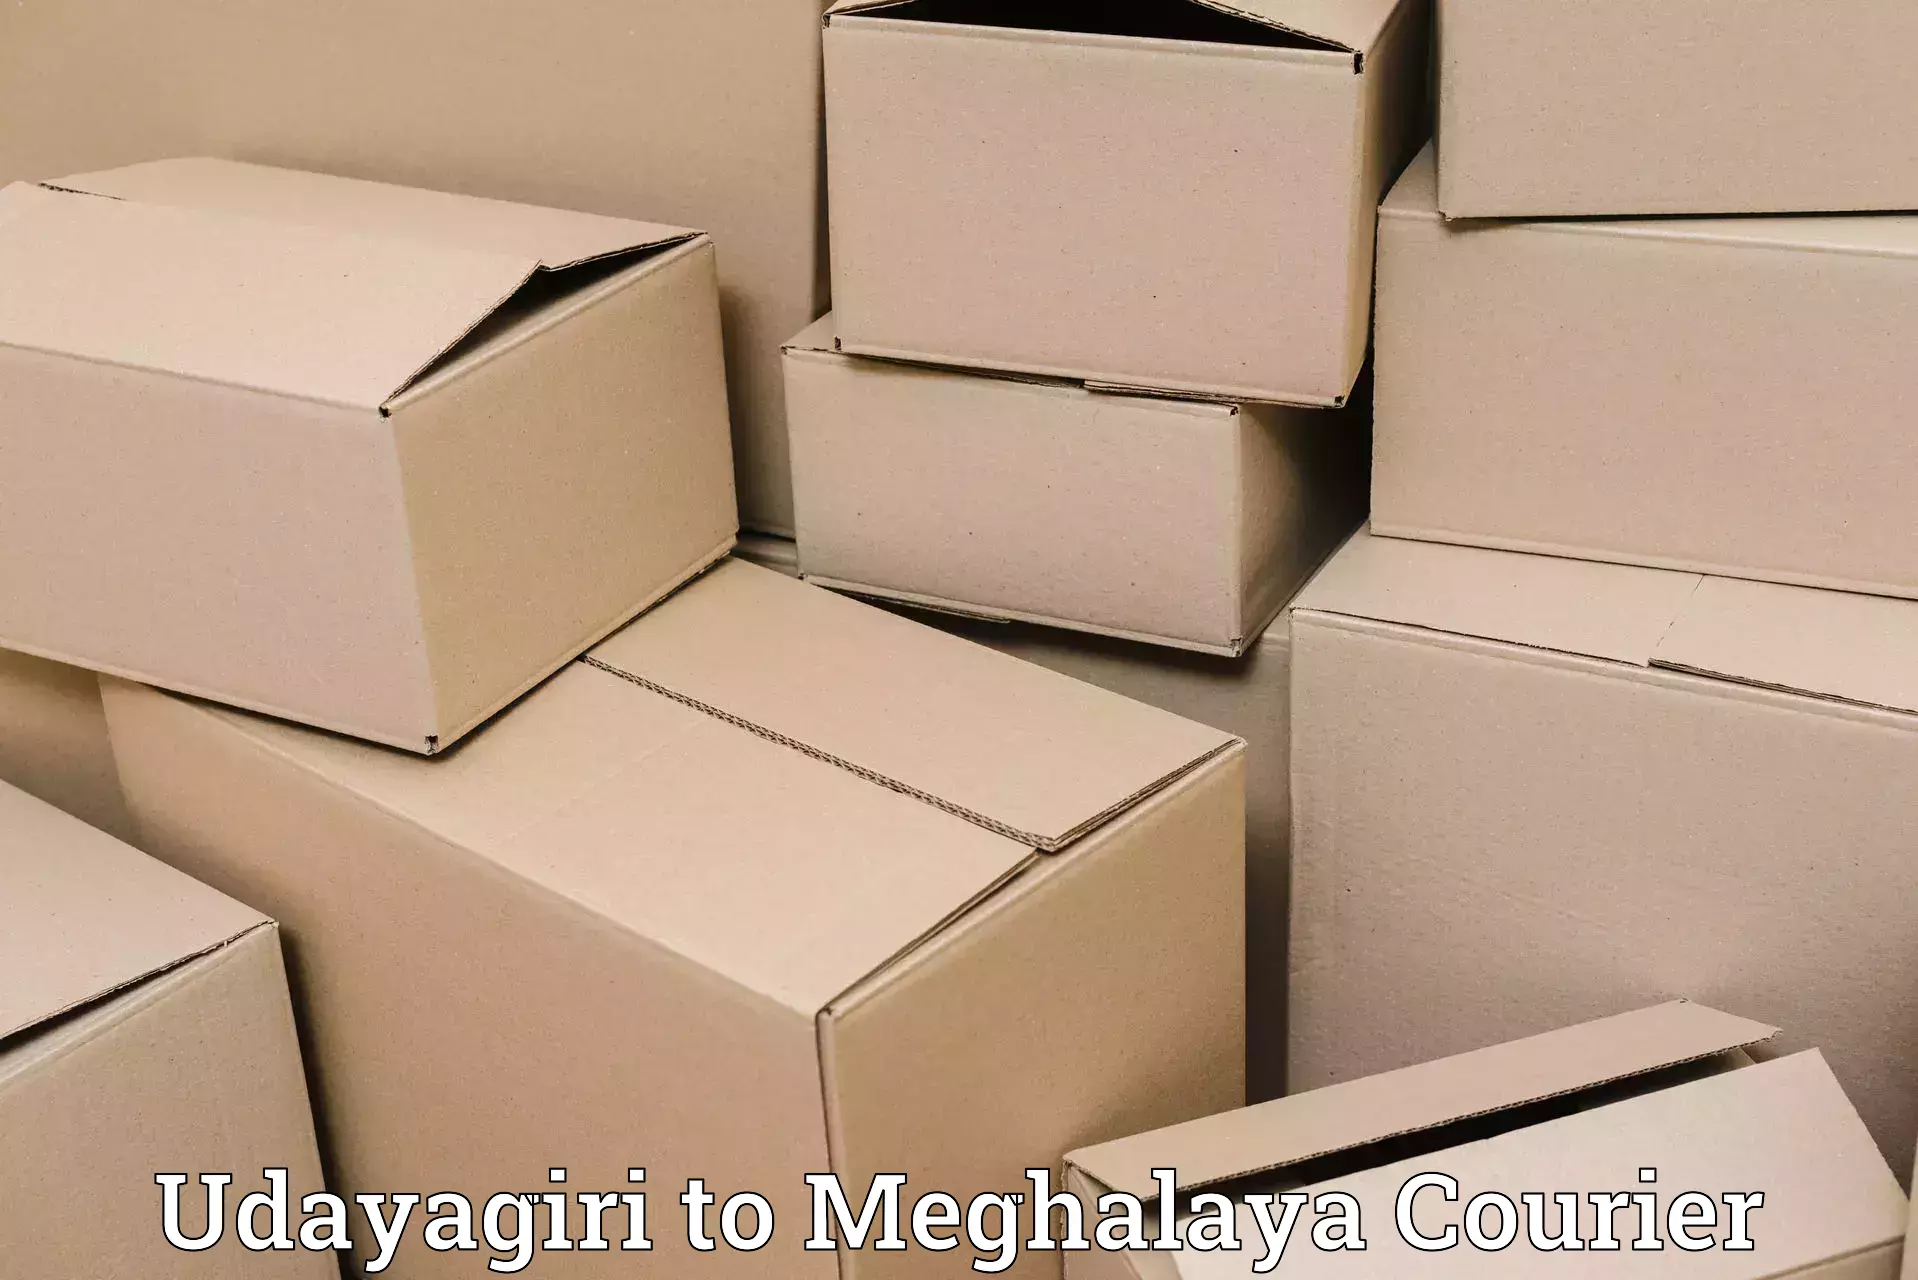 Baggage delivery scheduling Udayagiri to Meghalaya